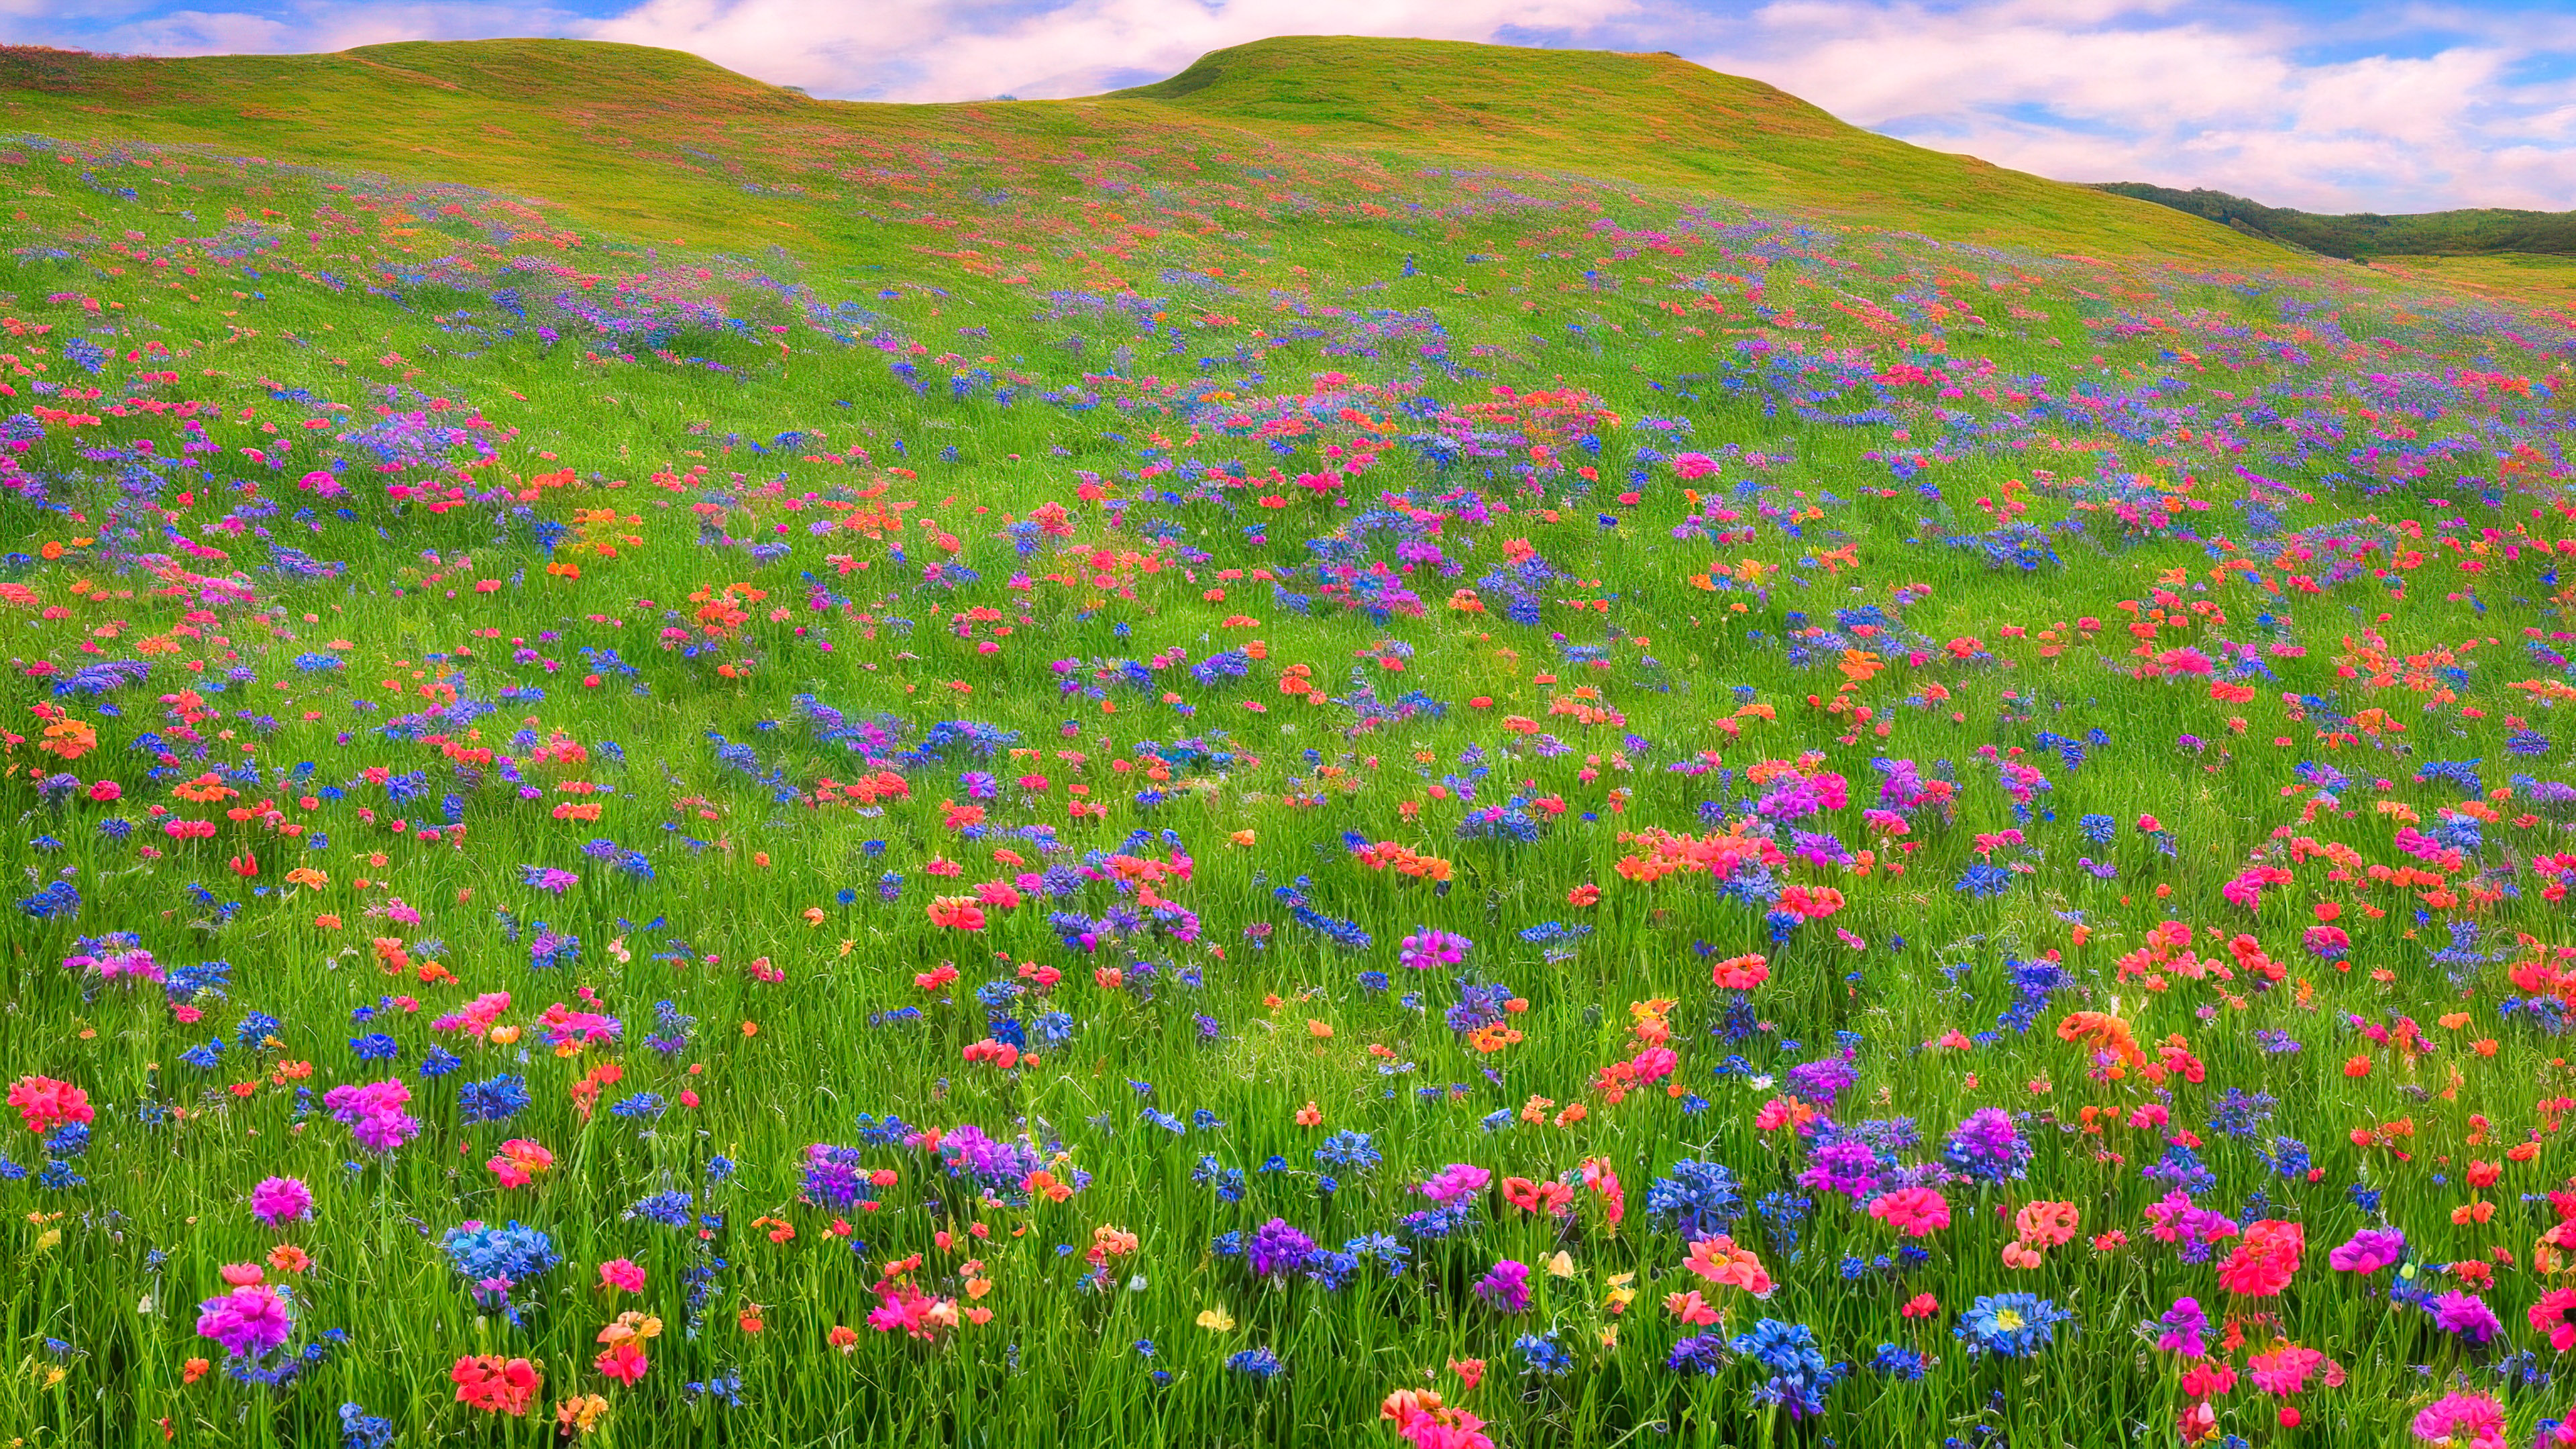 Apercevez la campagne avec notre fond d'écran d'arrière-plan de paysage, présentant une prairie pittoresque couverte de fleurs sauvages colorées, avec en toile de fond des collines ondulantes.